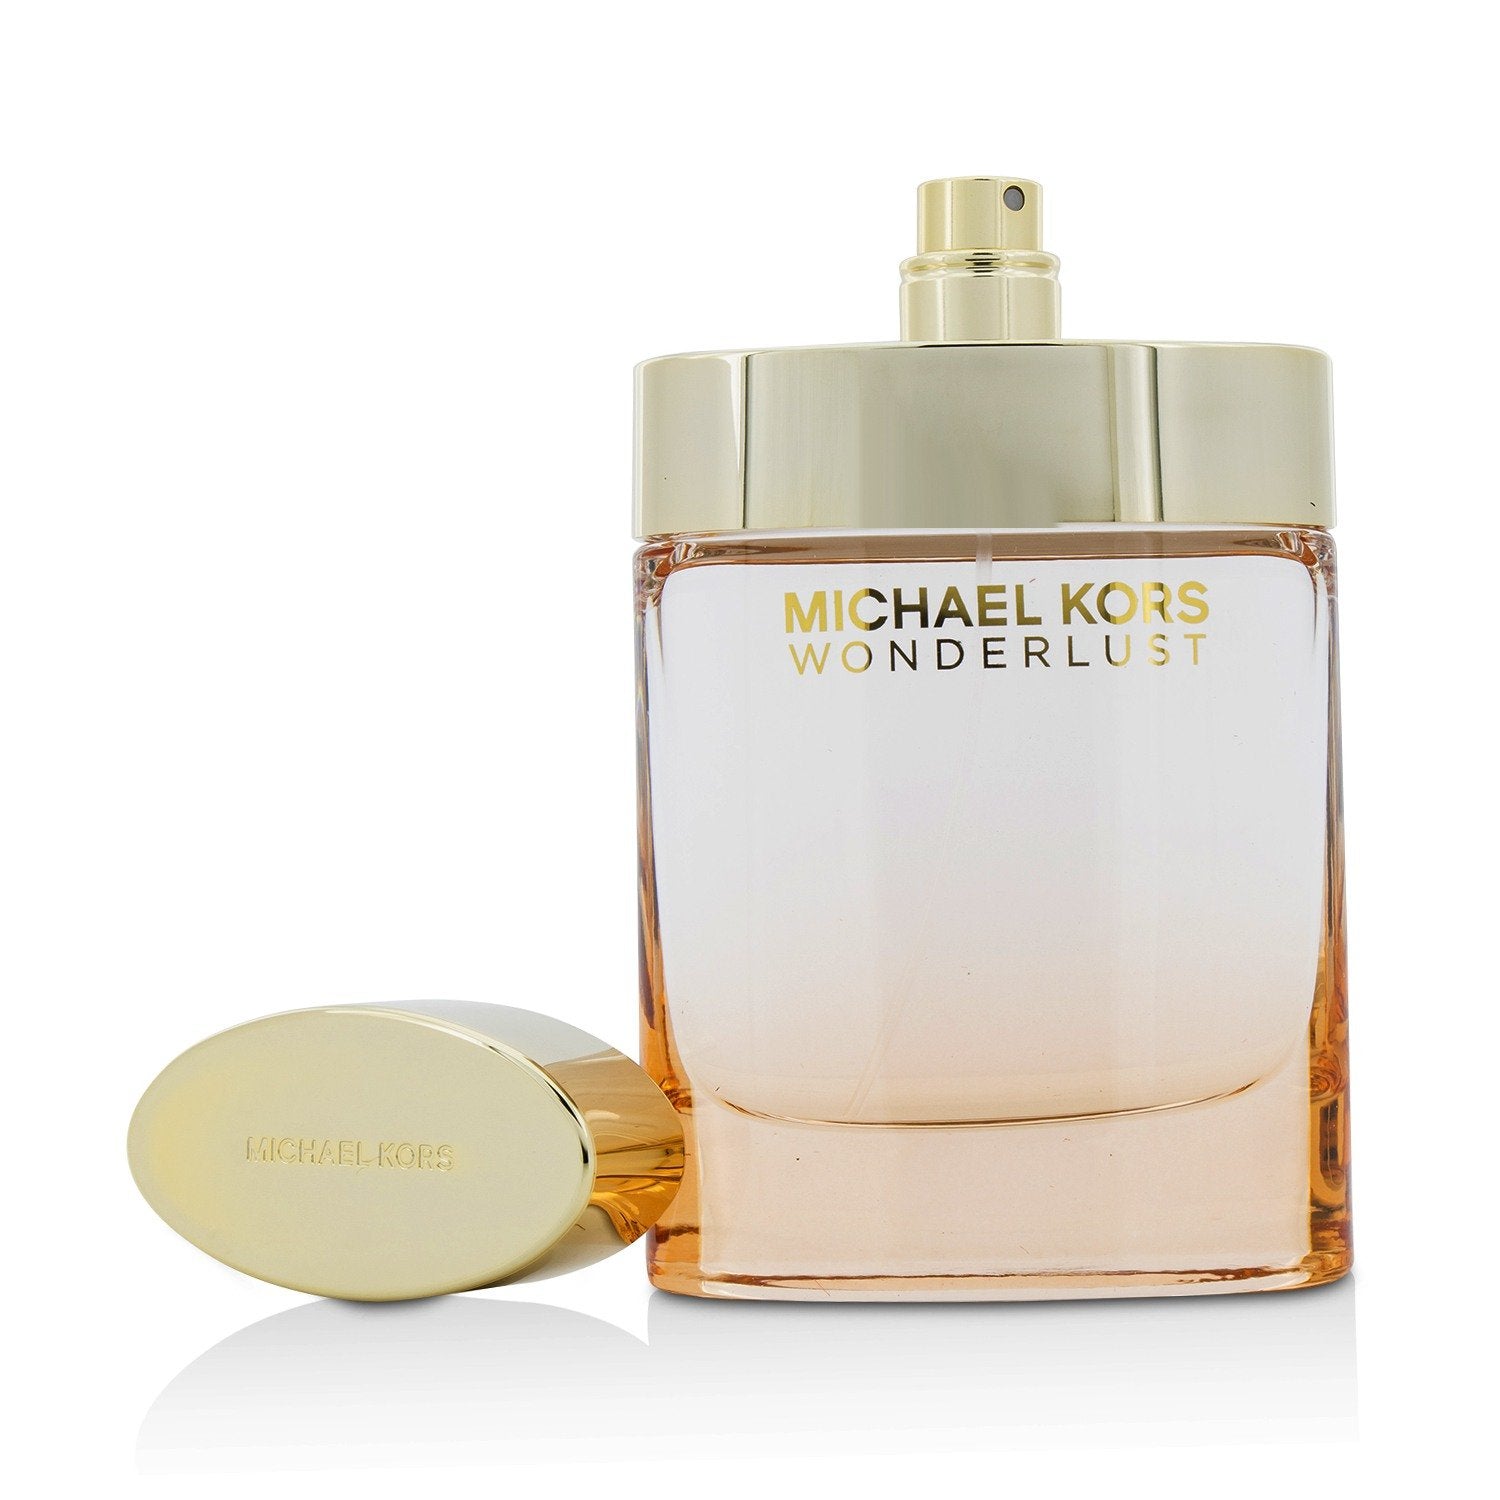 Michael Kors Wonderlust Eau de Parfum Spray, 3.4 Fl Oz (Package May Vary)